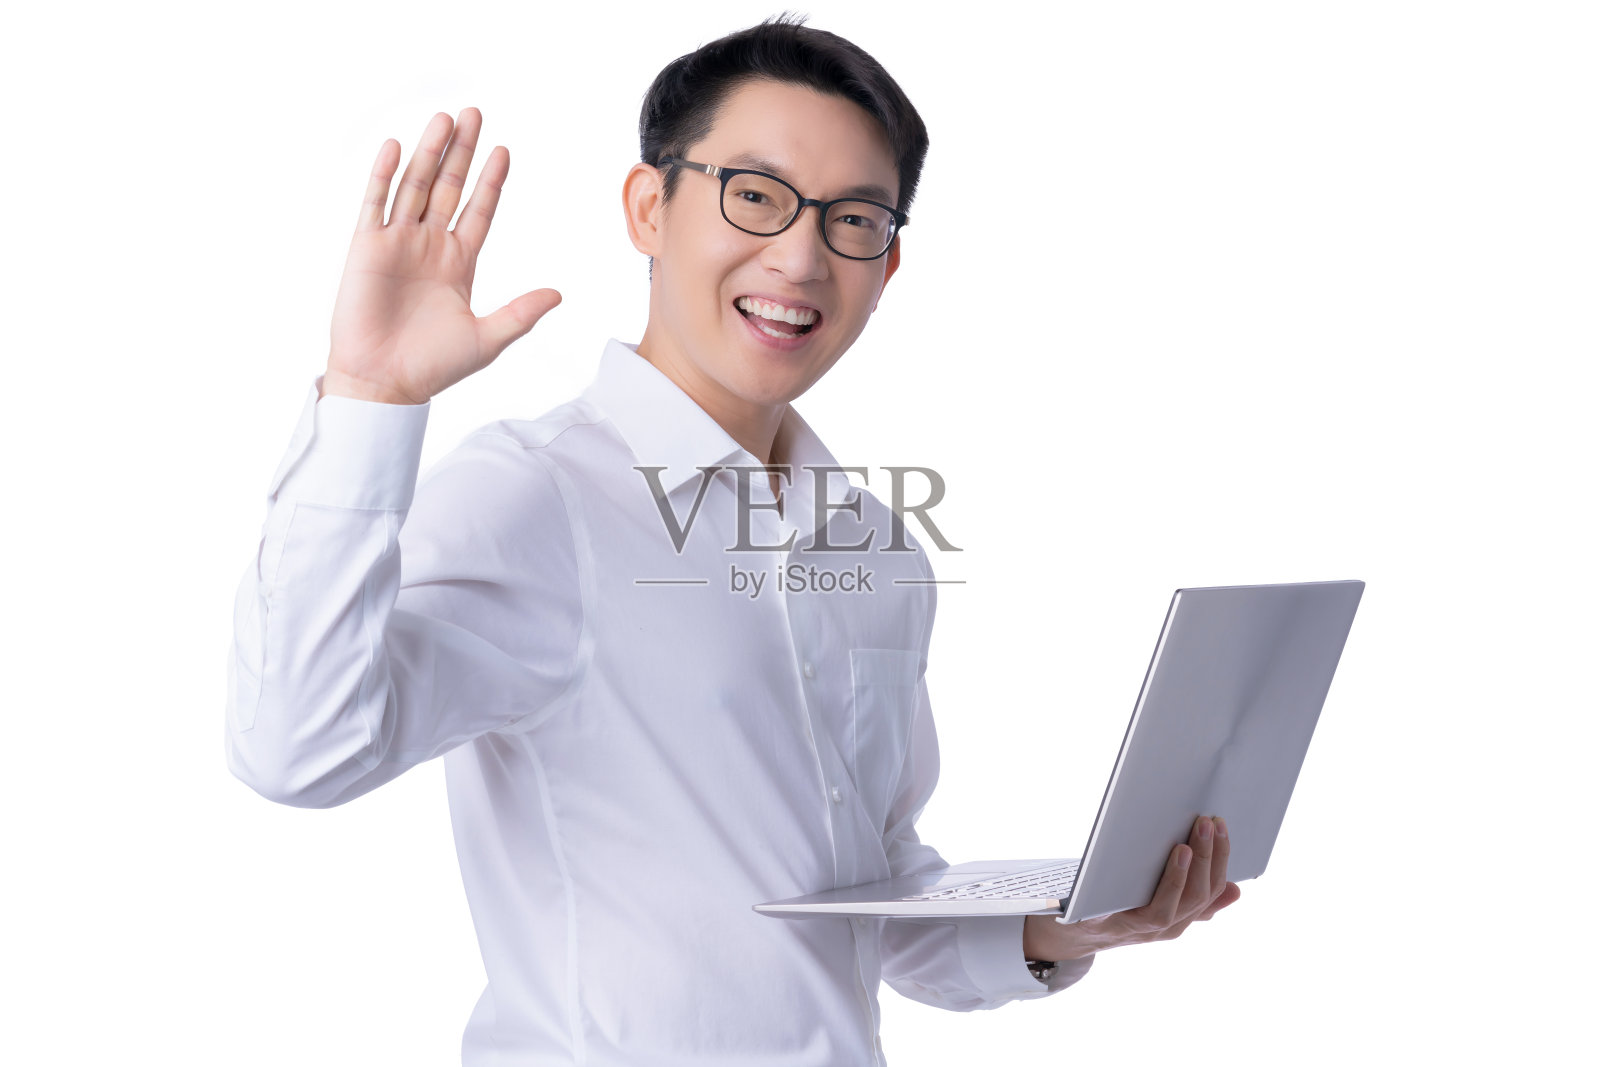 商务沟通的理念概念与亚洲有吸引力的男性白衬衫手持笔记本电脑微笑和幸福的手势pose快乐的时刻照片摄影图片